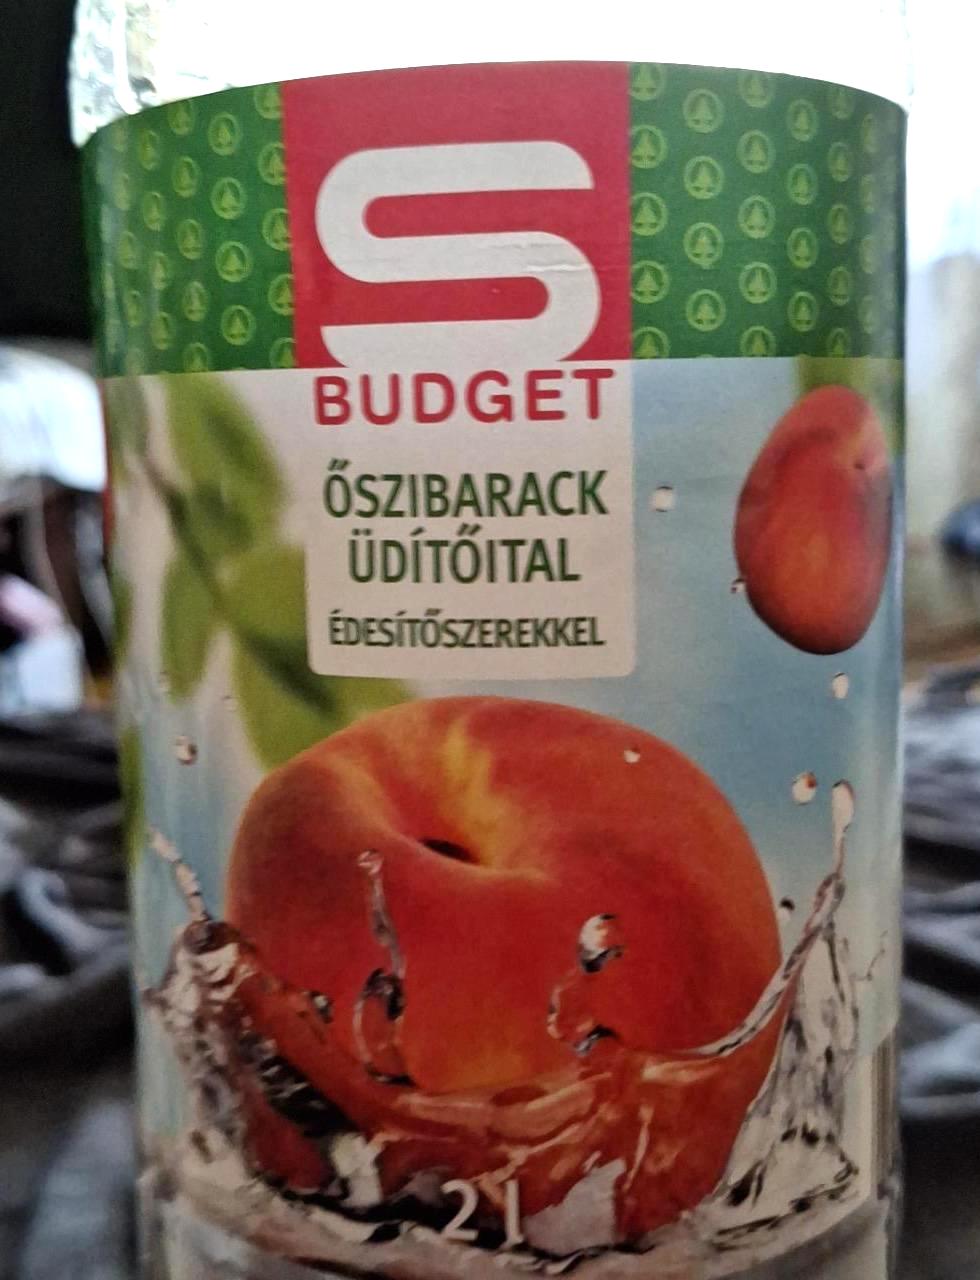 Képek - Őszibarack üdítőital édesítőszerekkel S Budget